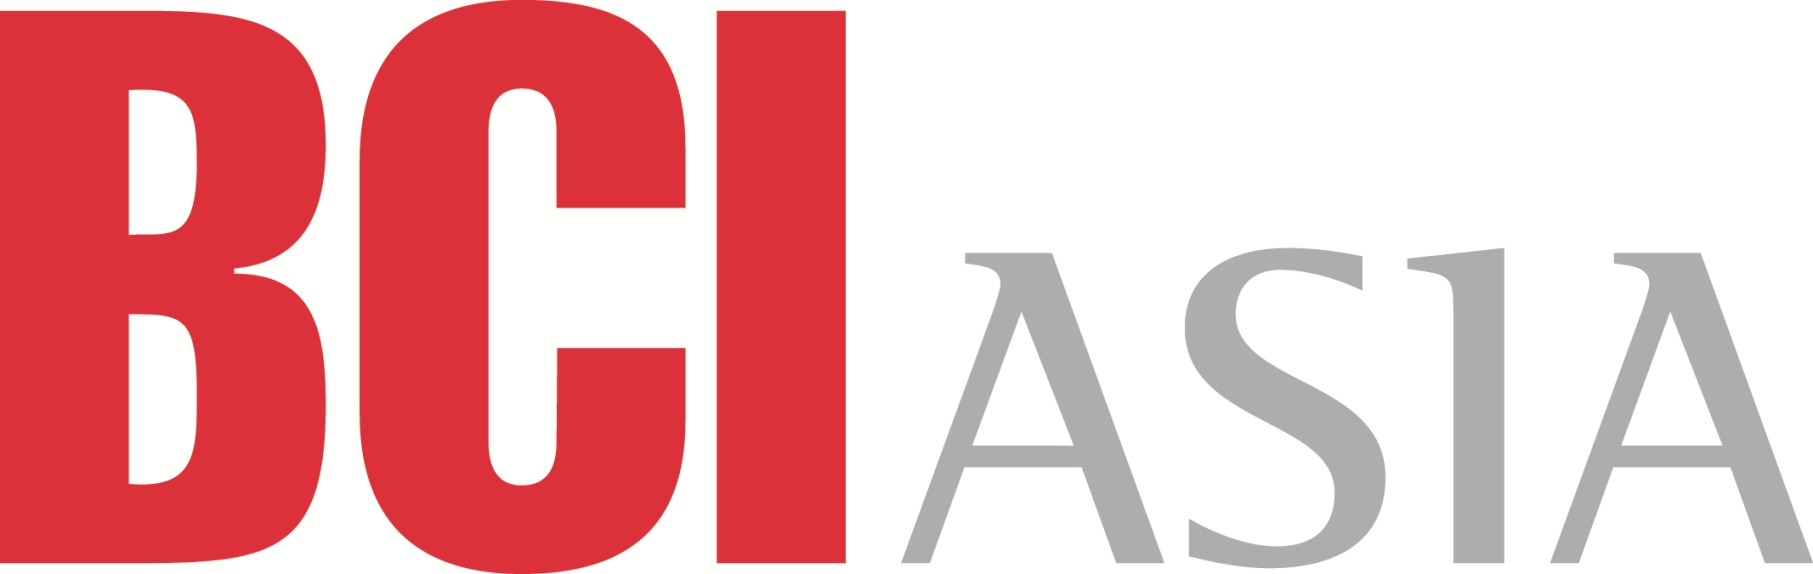 BCIAsia Logo - Copy